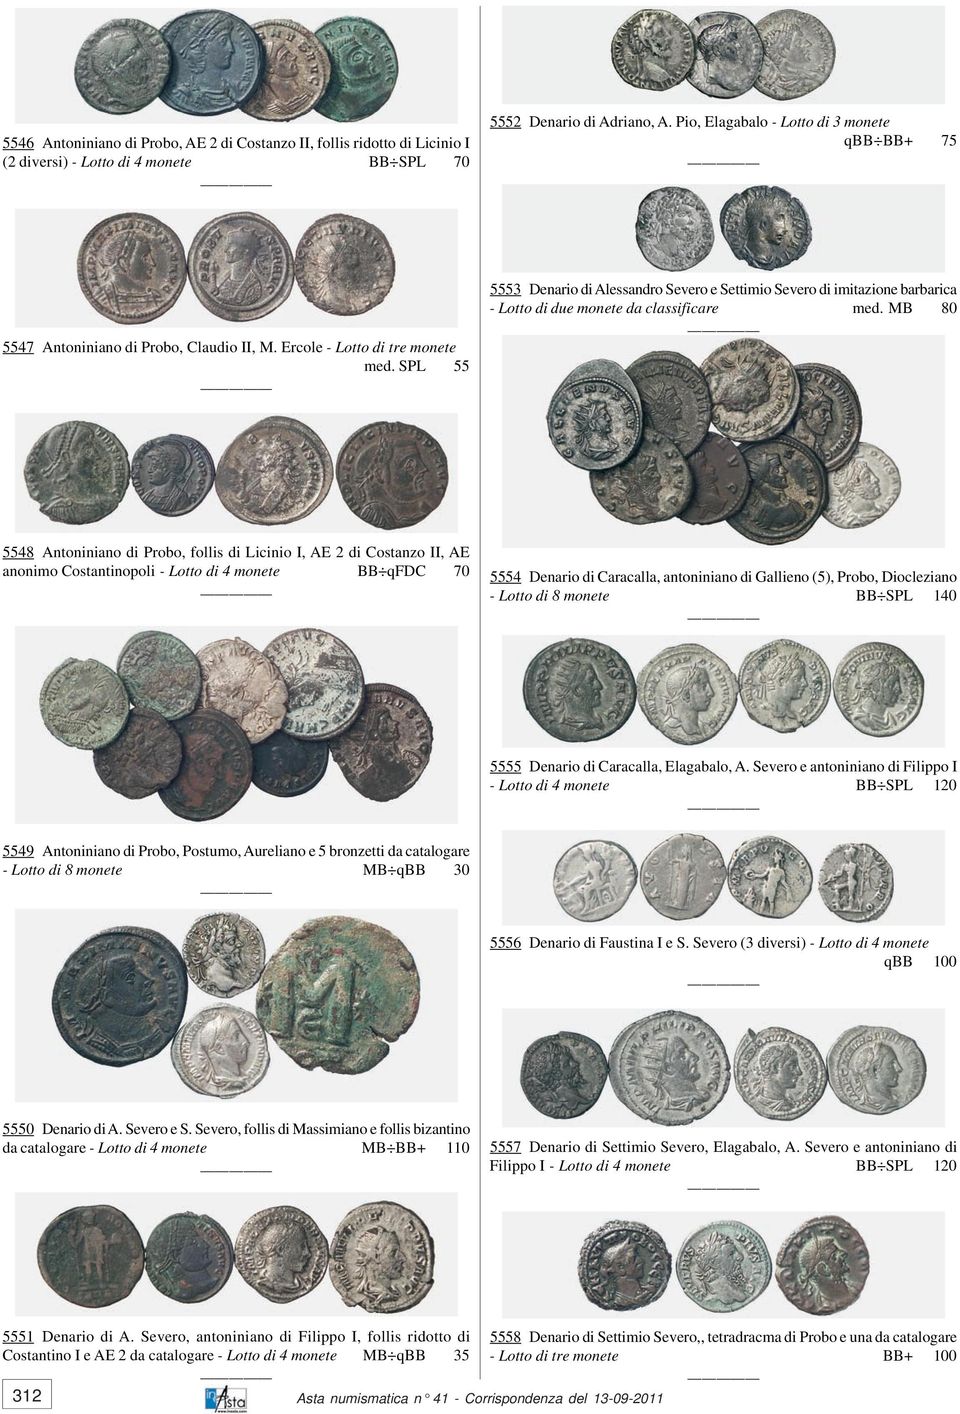 SPL 55 5553 Denario di Alessandro Severo e Settimio Severo di imitazione barbarica - Lotto di due monete da classificare med.